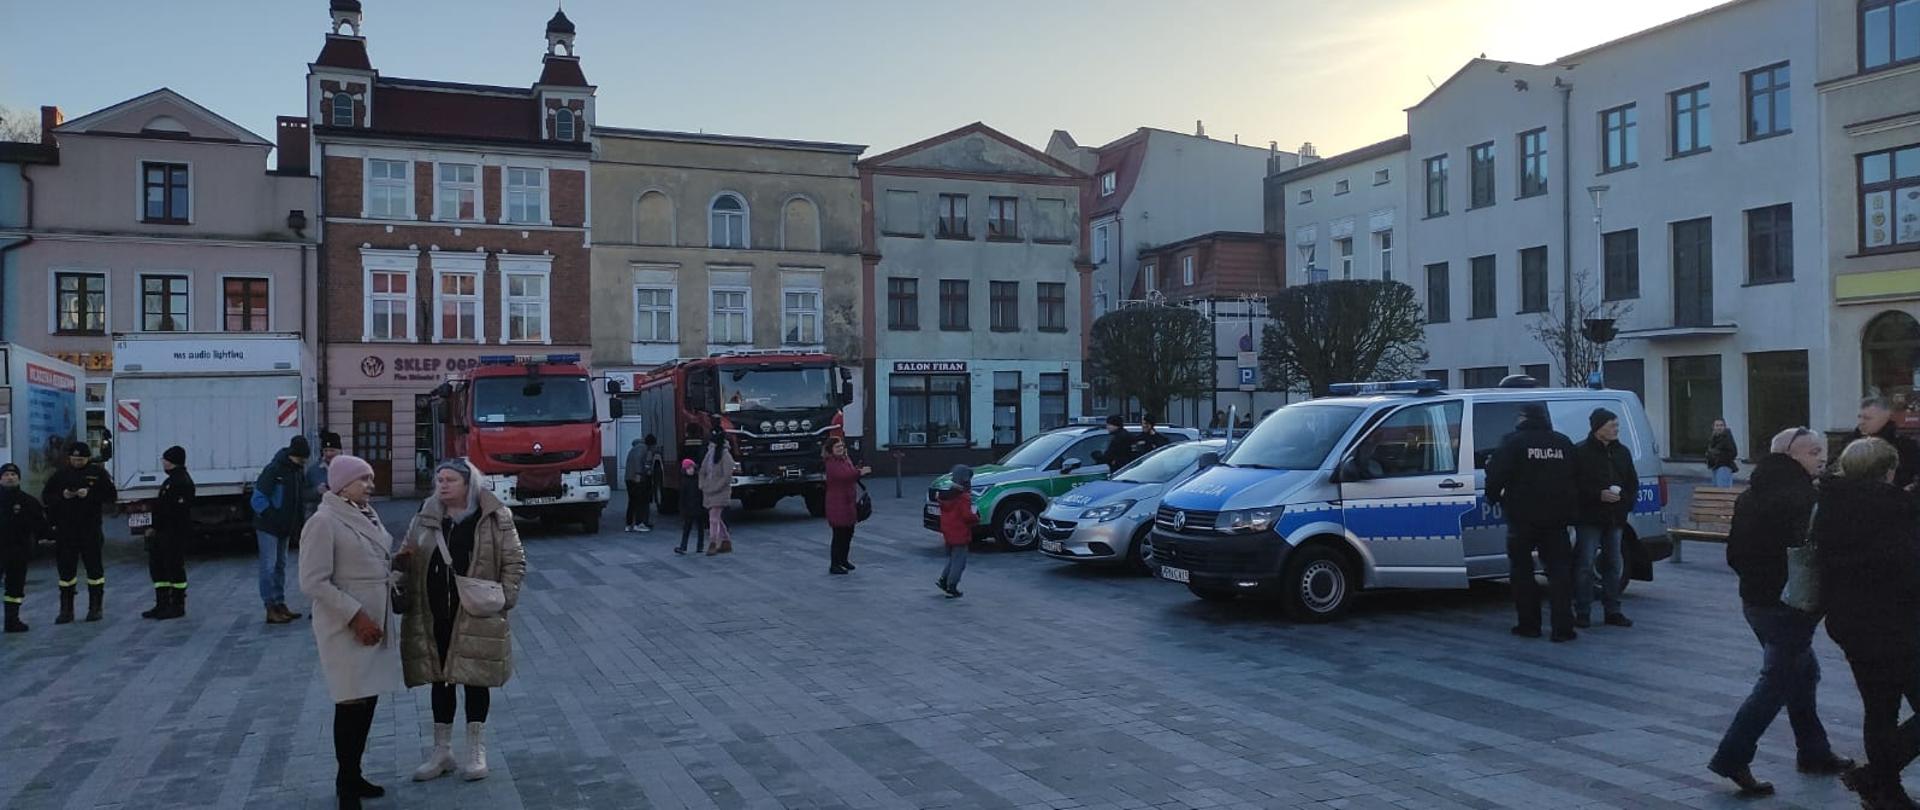 Na zdjęciu widać ustawione samochody służb mundurowych, które biorą udział w Finale WOŚP na rynku w Pucku, przy pojazdach znajdują się funkcjonariusze Straży Pożarnej, Policji oraz Straży Granicznej. 